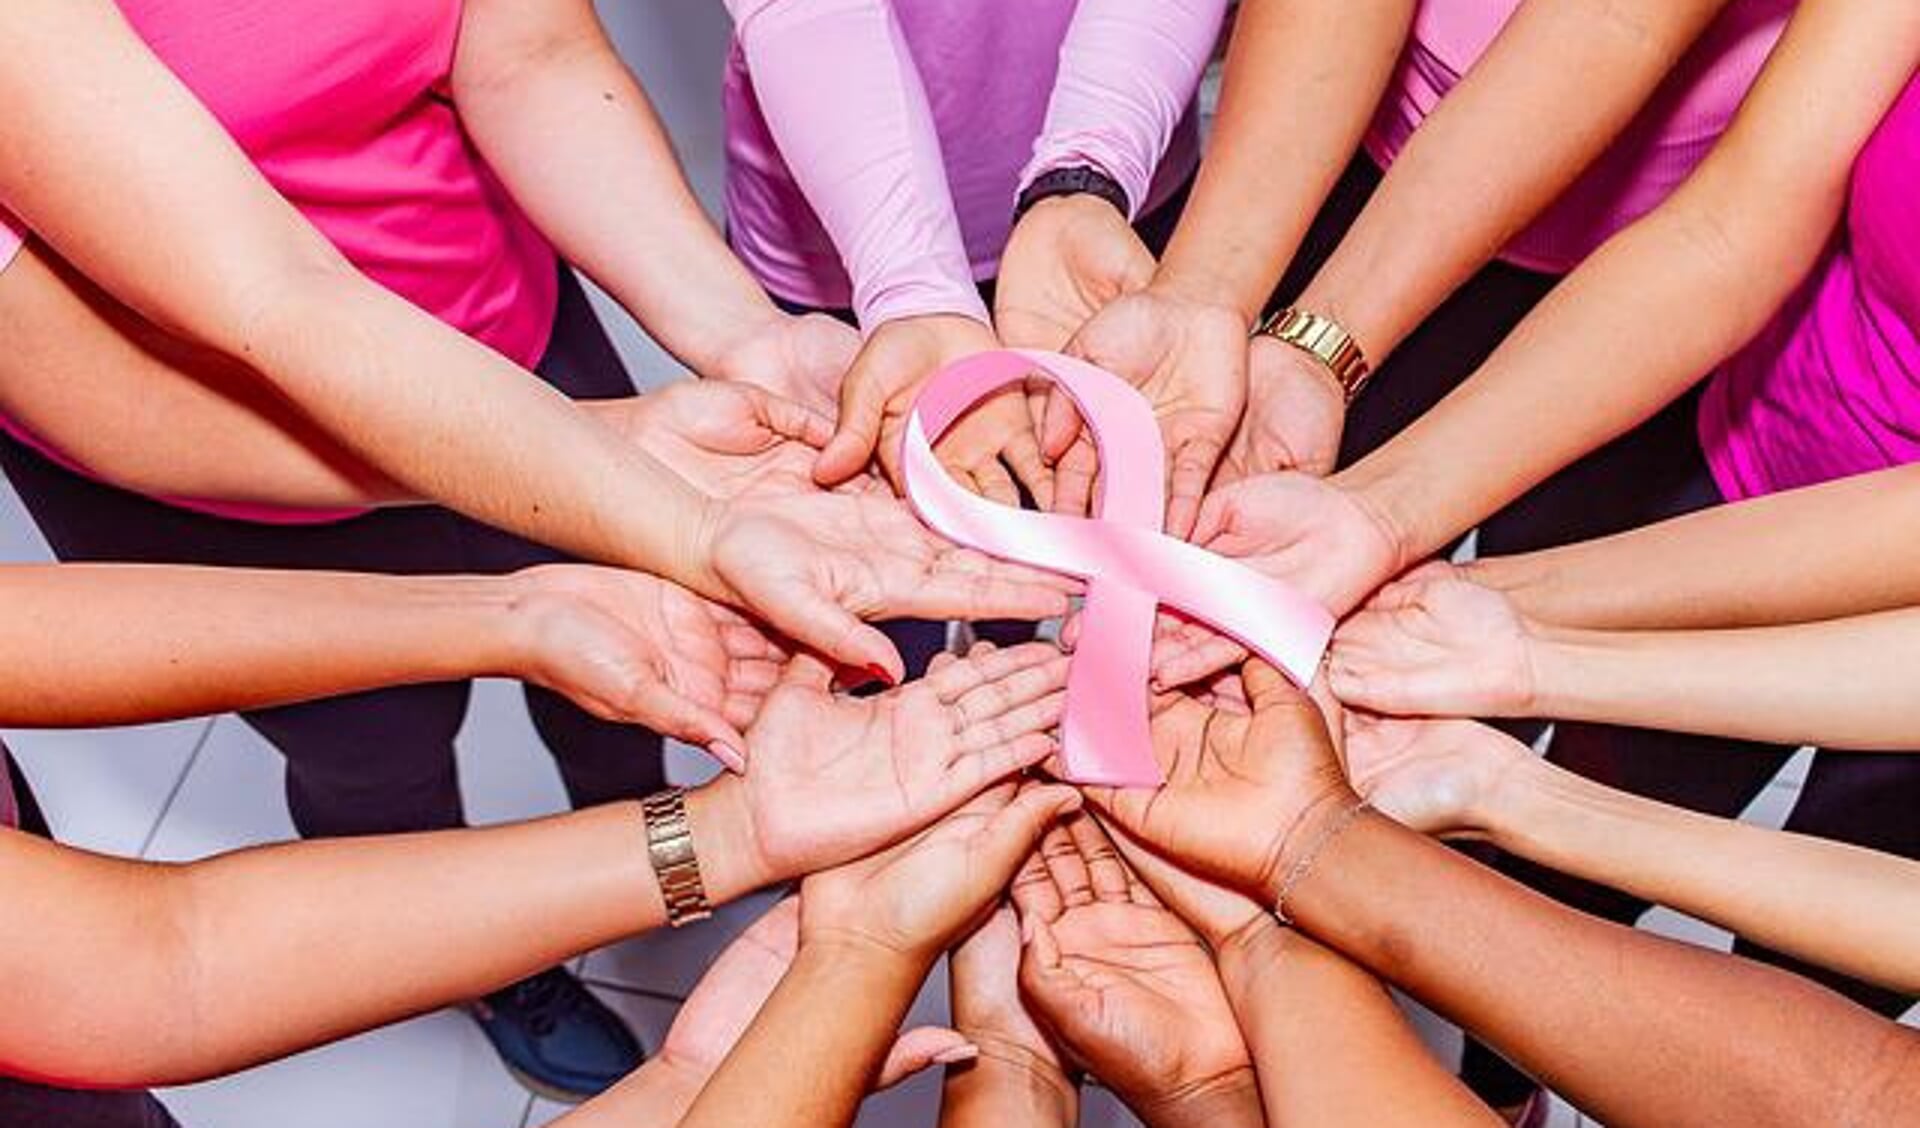 Roze lint is een symbool dat internationaal wordt gebruikt om betrokkenheid bij borstkanker uit te drukken.